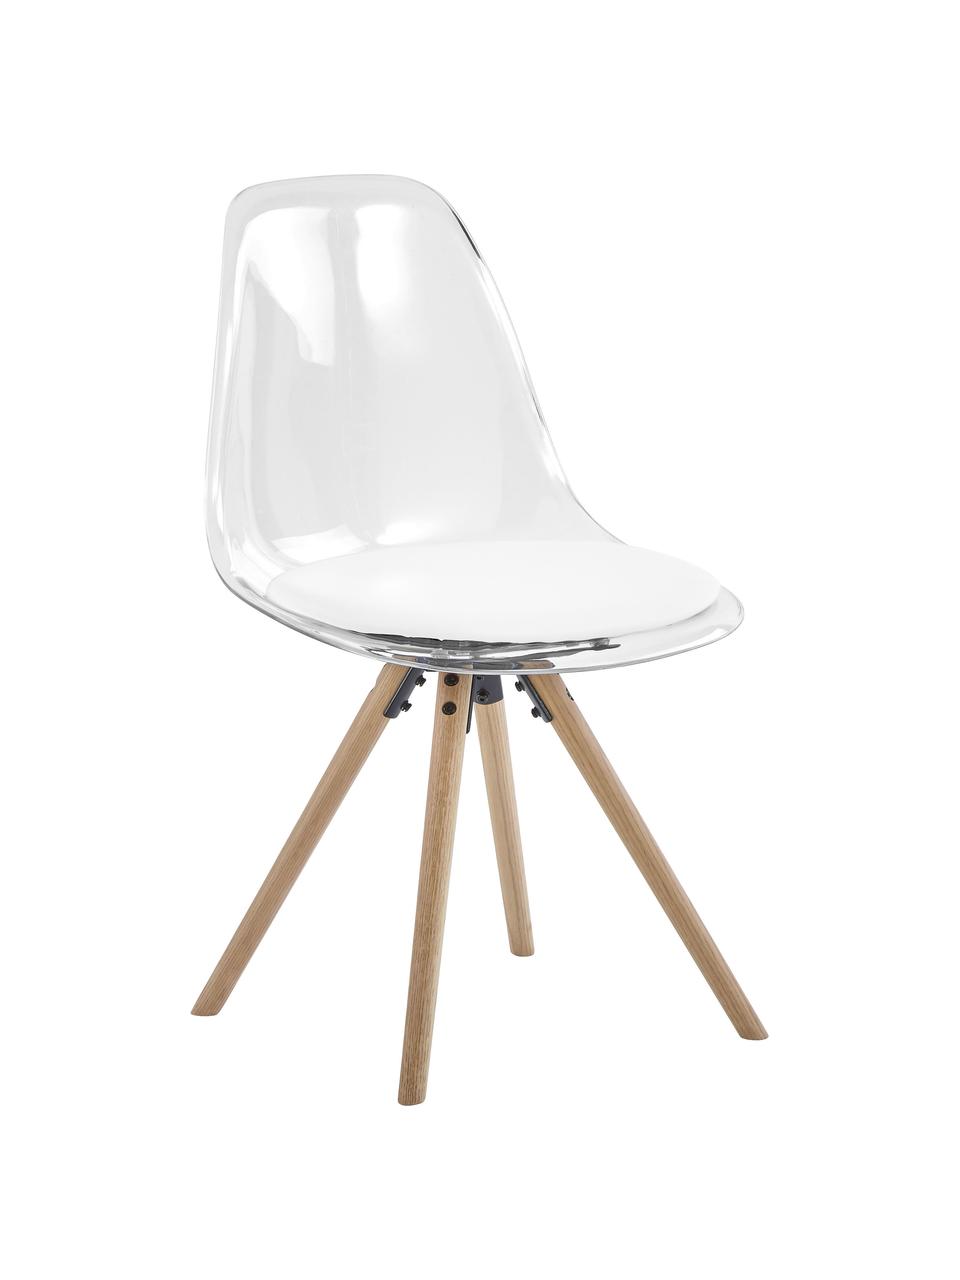 Kunststoff-Stühle Henning, 2 Stück, Sitzschale: Kunststoff, Beine: Eichenholz, geölt, Weiss, Transparent, Eichenholz, B 47 x T 53 cm